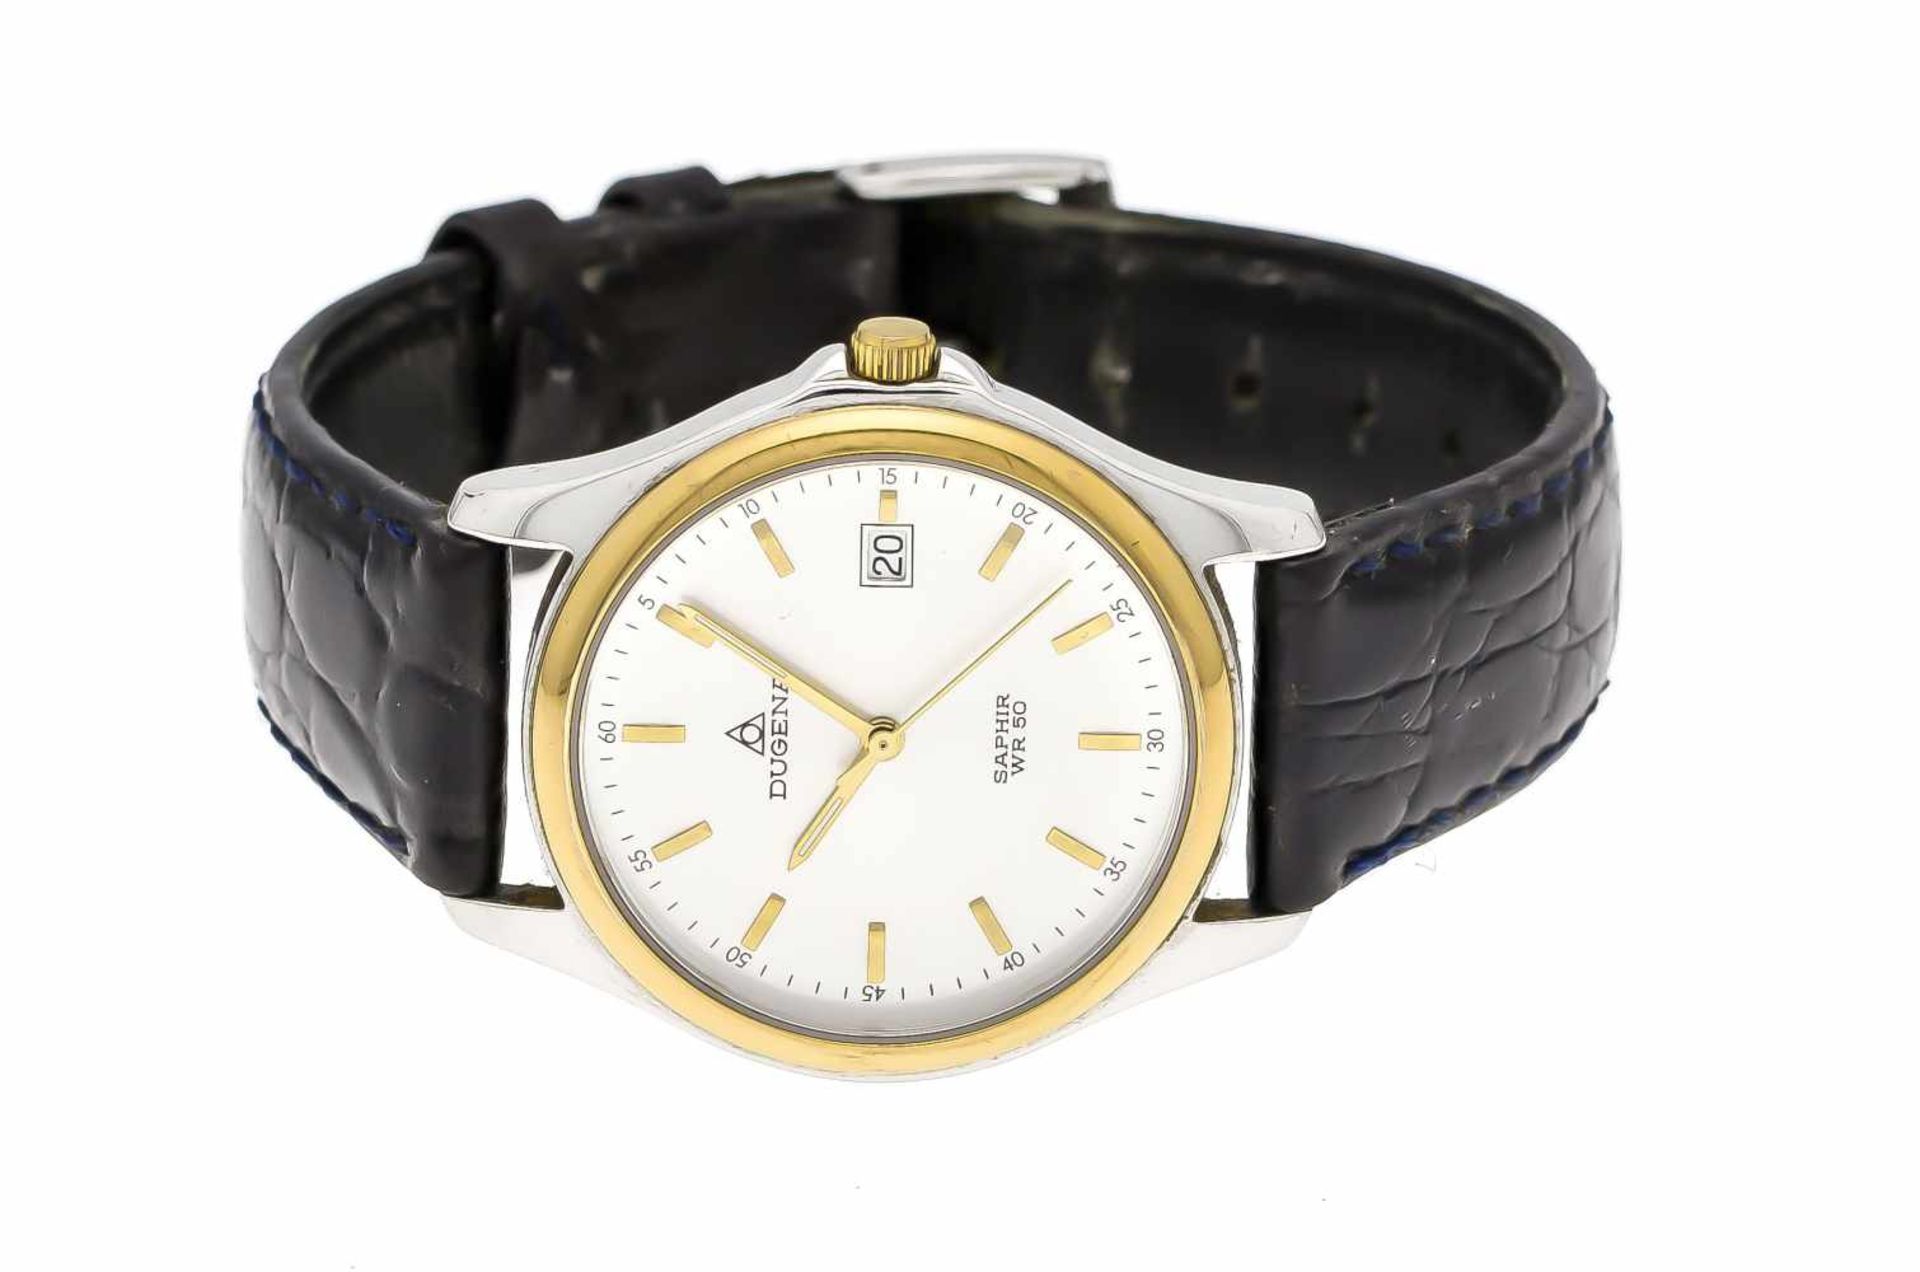 Dugena Herrenquarzuhr bicolor, mit schwarzem Lederband, Uhr läuft, wd 50m, silberf.Zifferblatt mit - Image 2 of 3